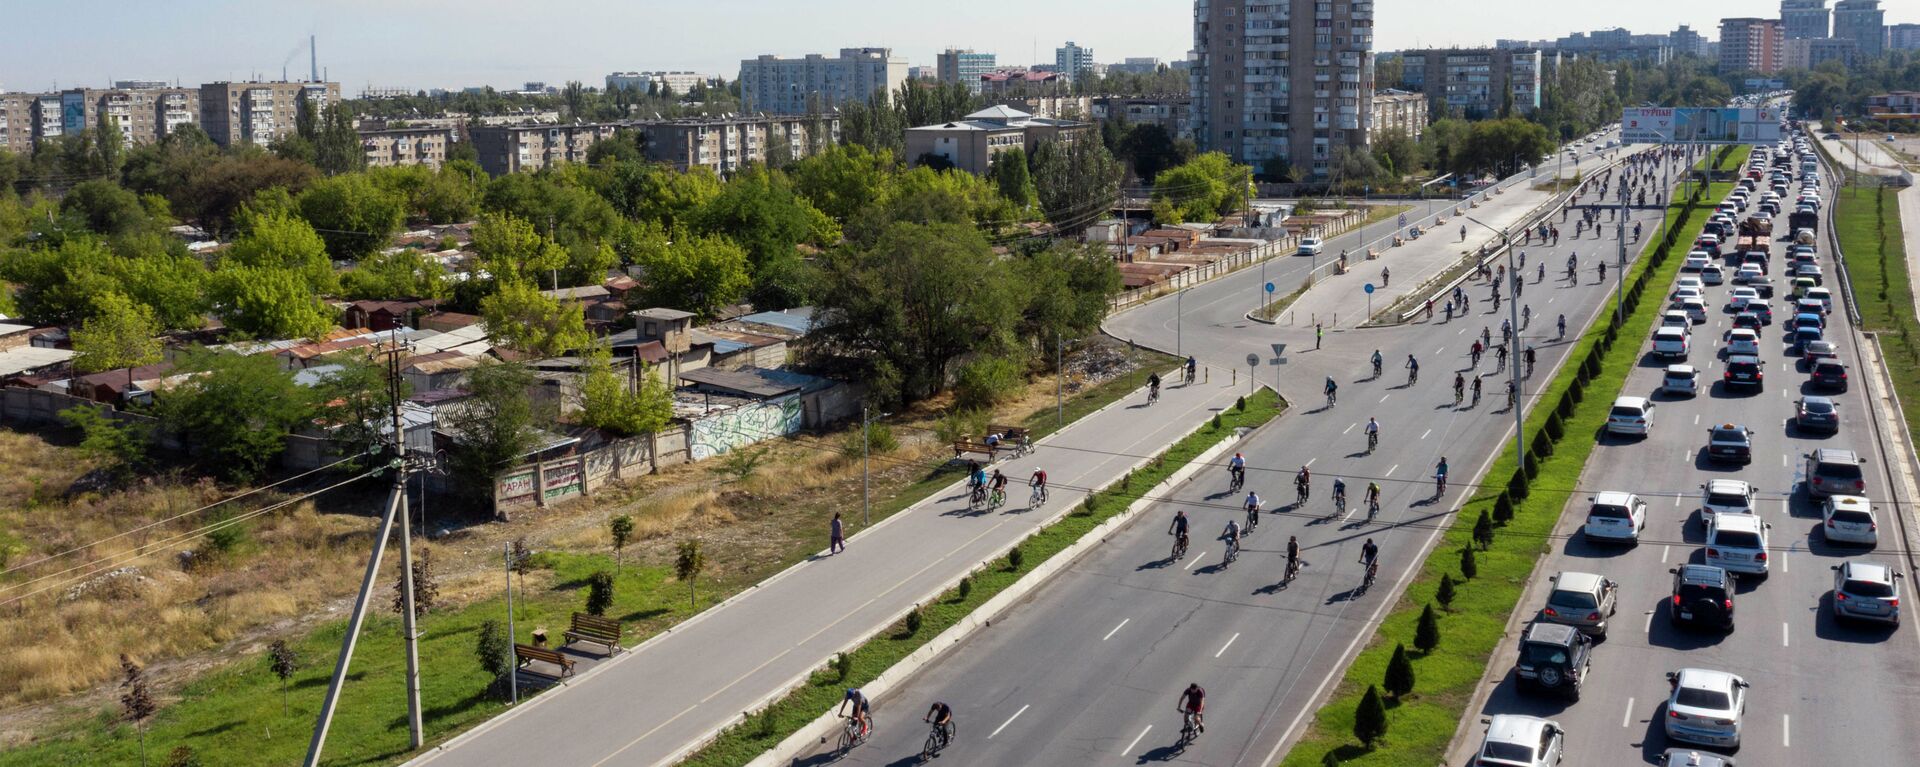 Первый в 2020 году велопробег в Бишкеке - Sputnik Кыргызстан, 1920, 30.08.2020